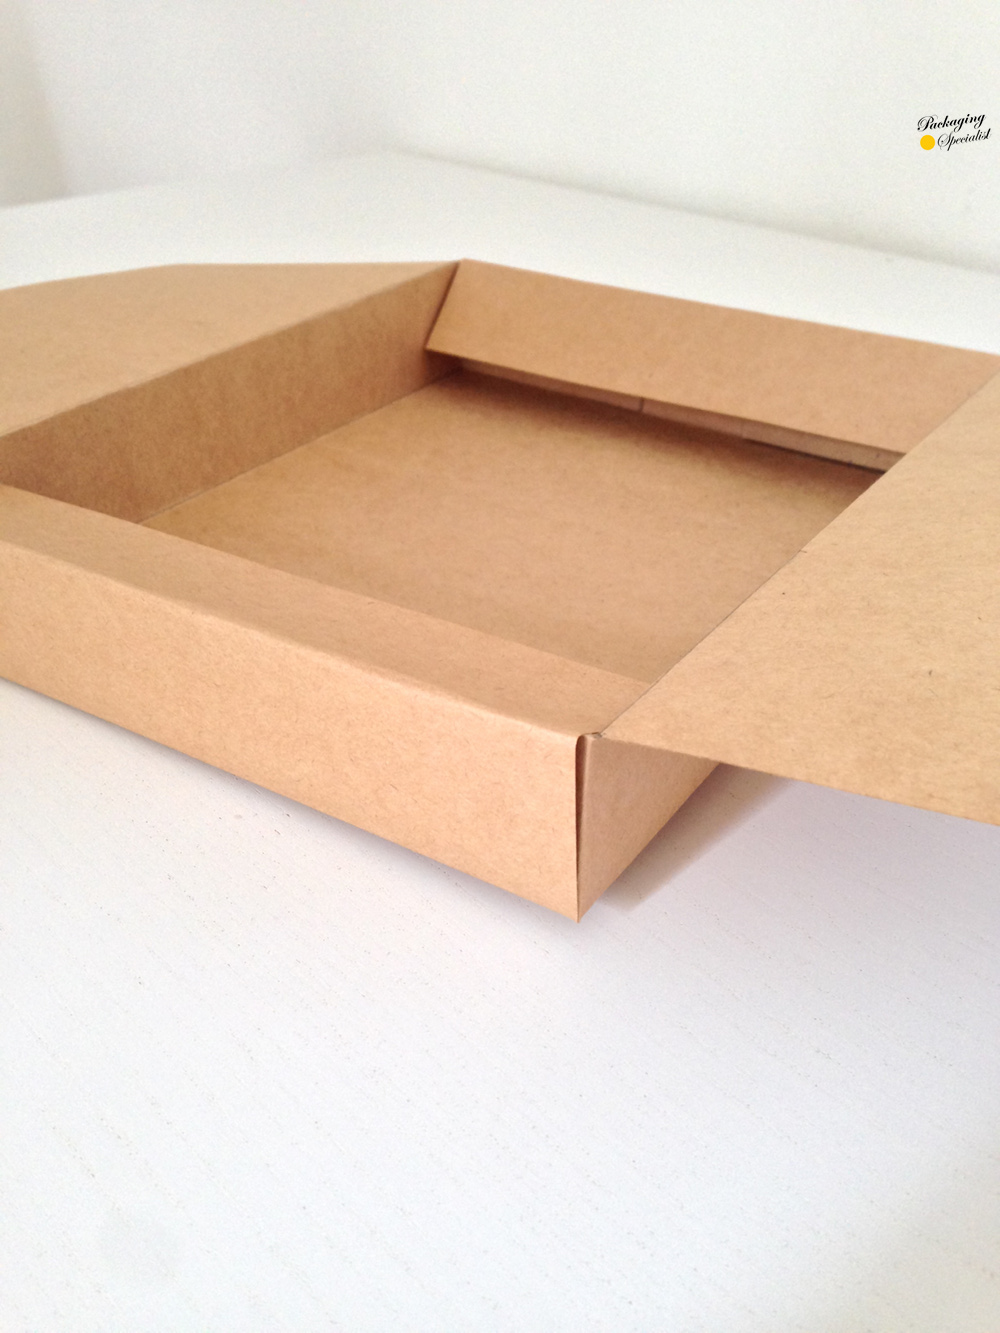 box cardboard design Food Packaging